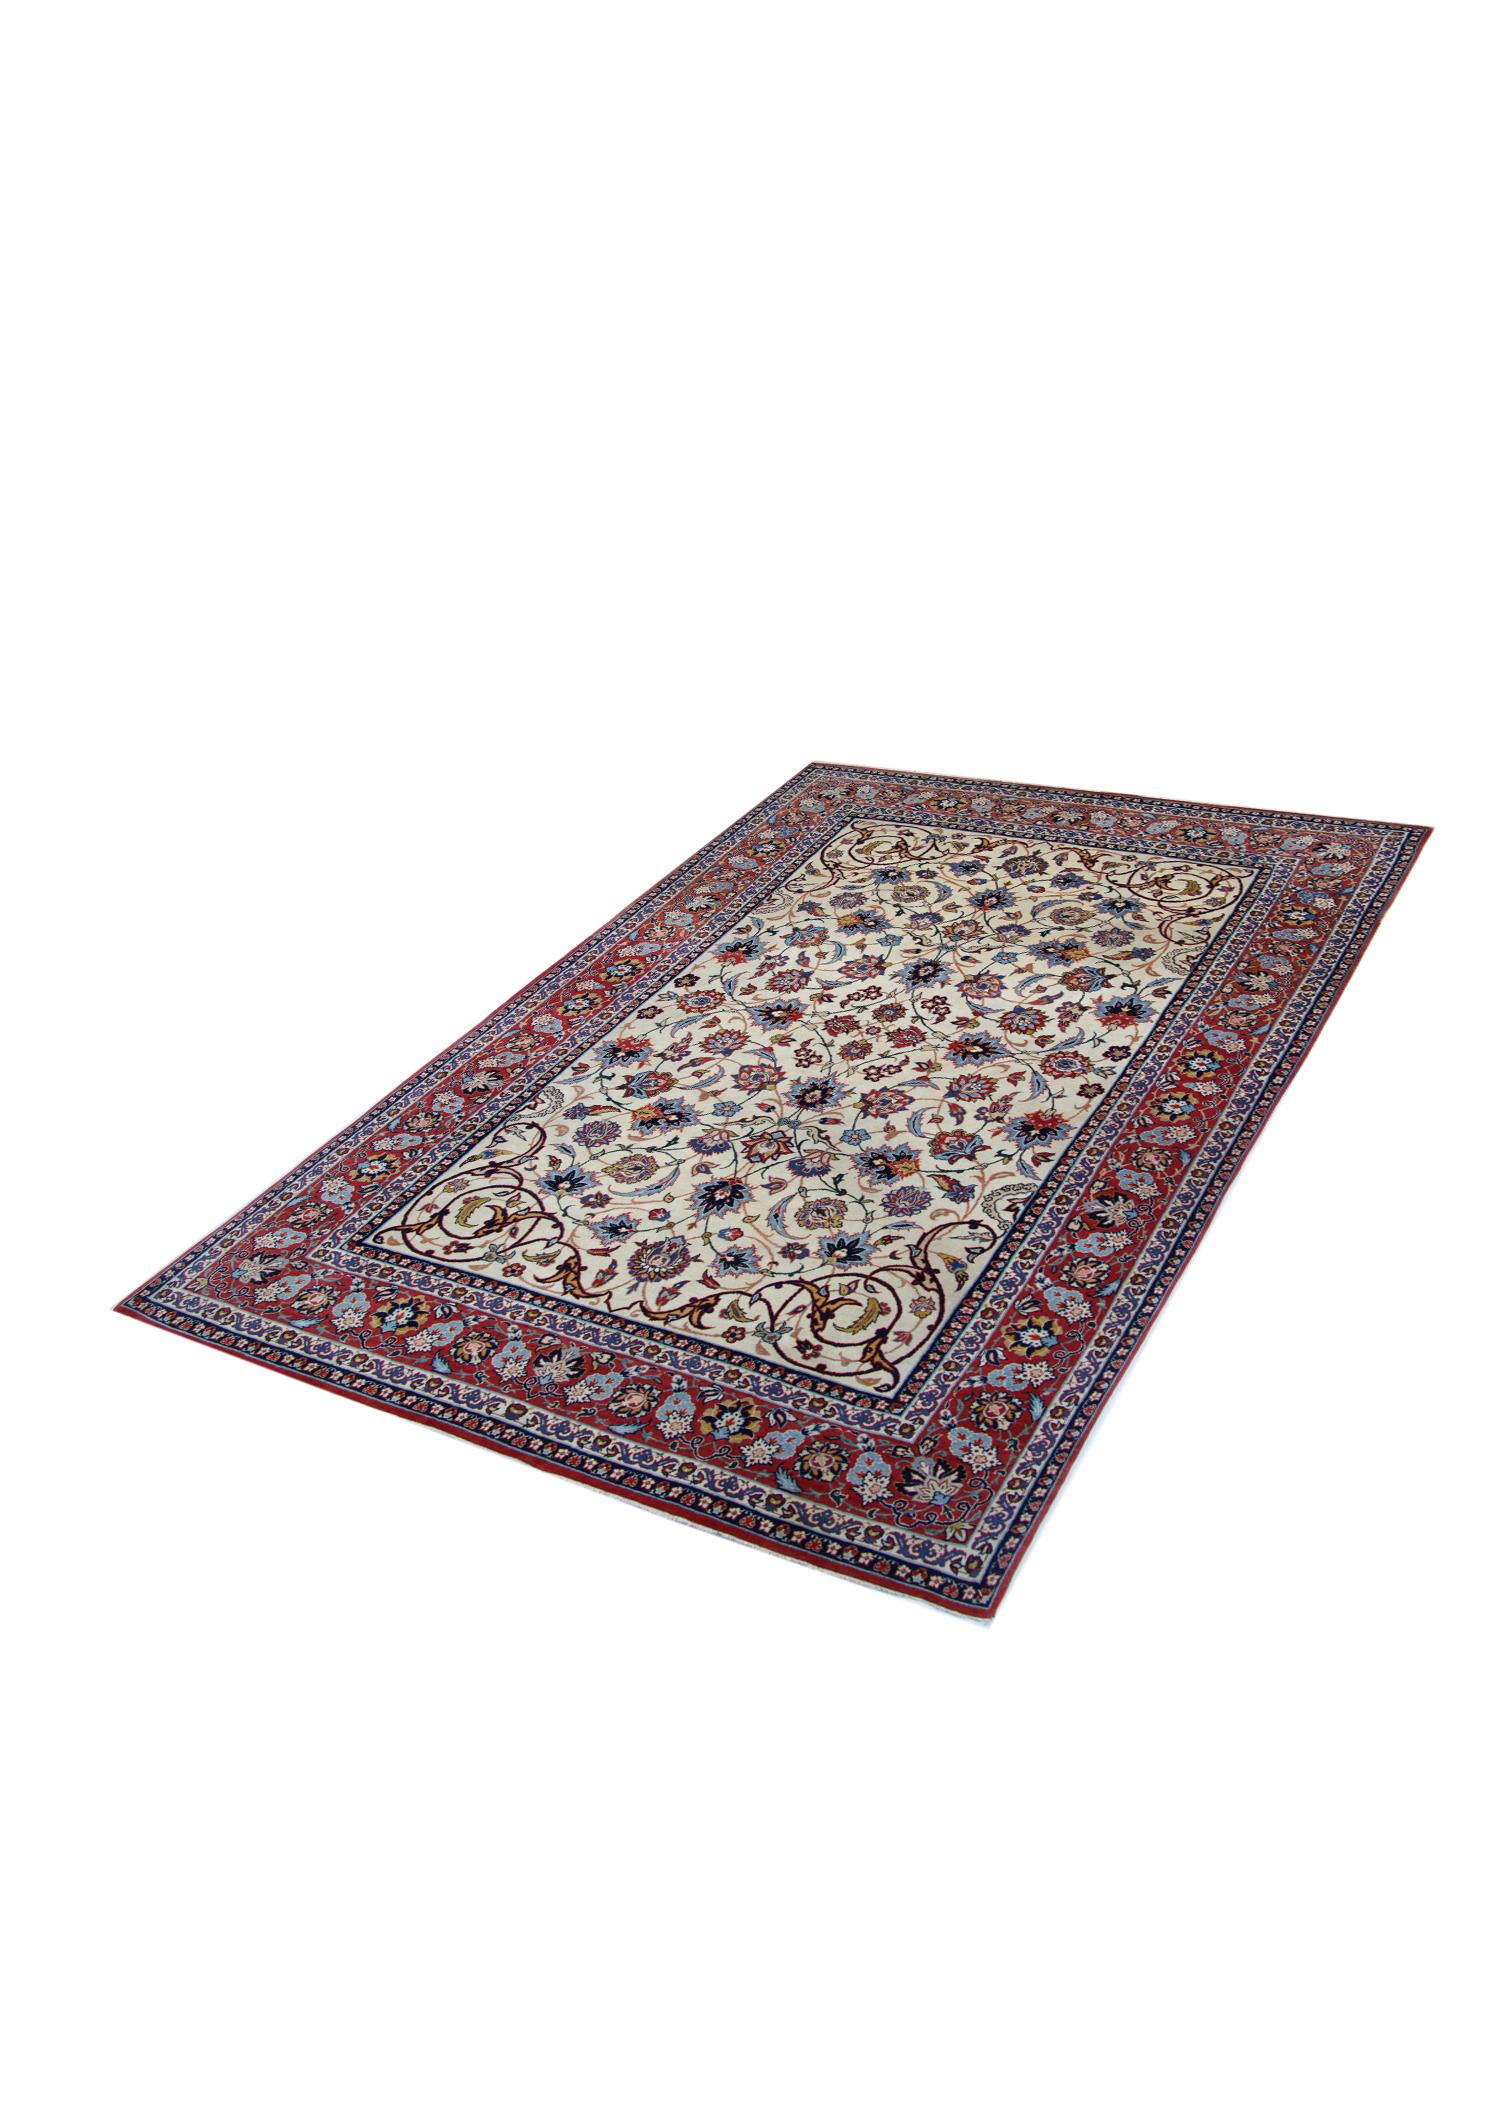 Handgewebter orientalischer Teppich in Blau, Rot und Creme, Vintage, Teppich mit Blumenmuster 206x139cm  (Arts and Crafts) im Angebot